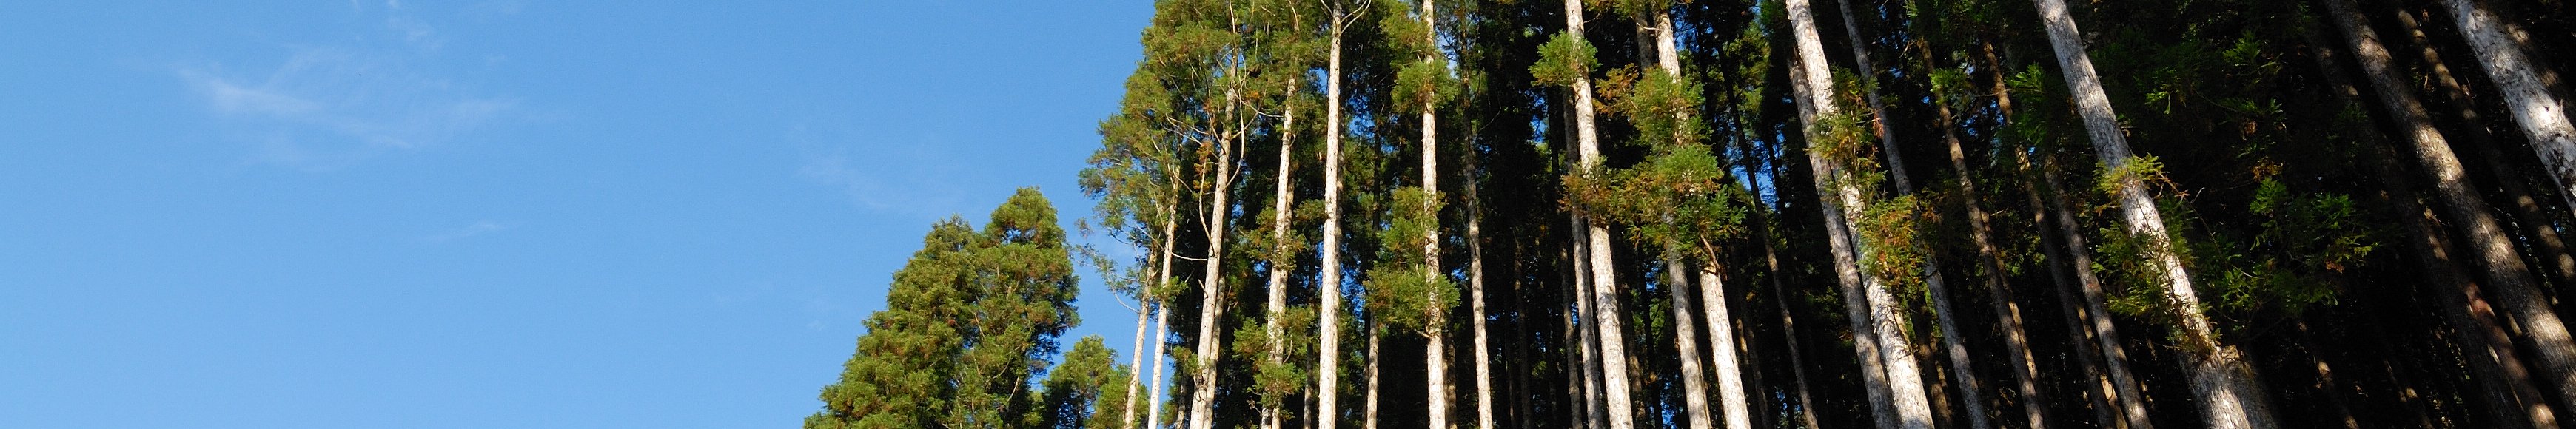 東白川村 100年の森林づくり構想(写真:東濃ひのき)